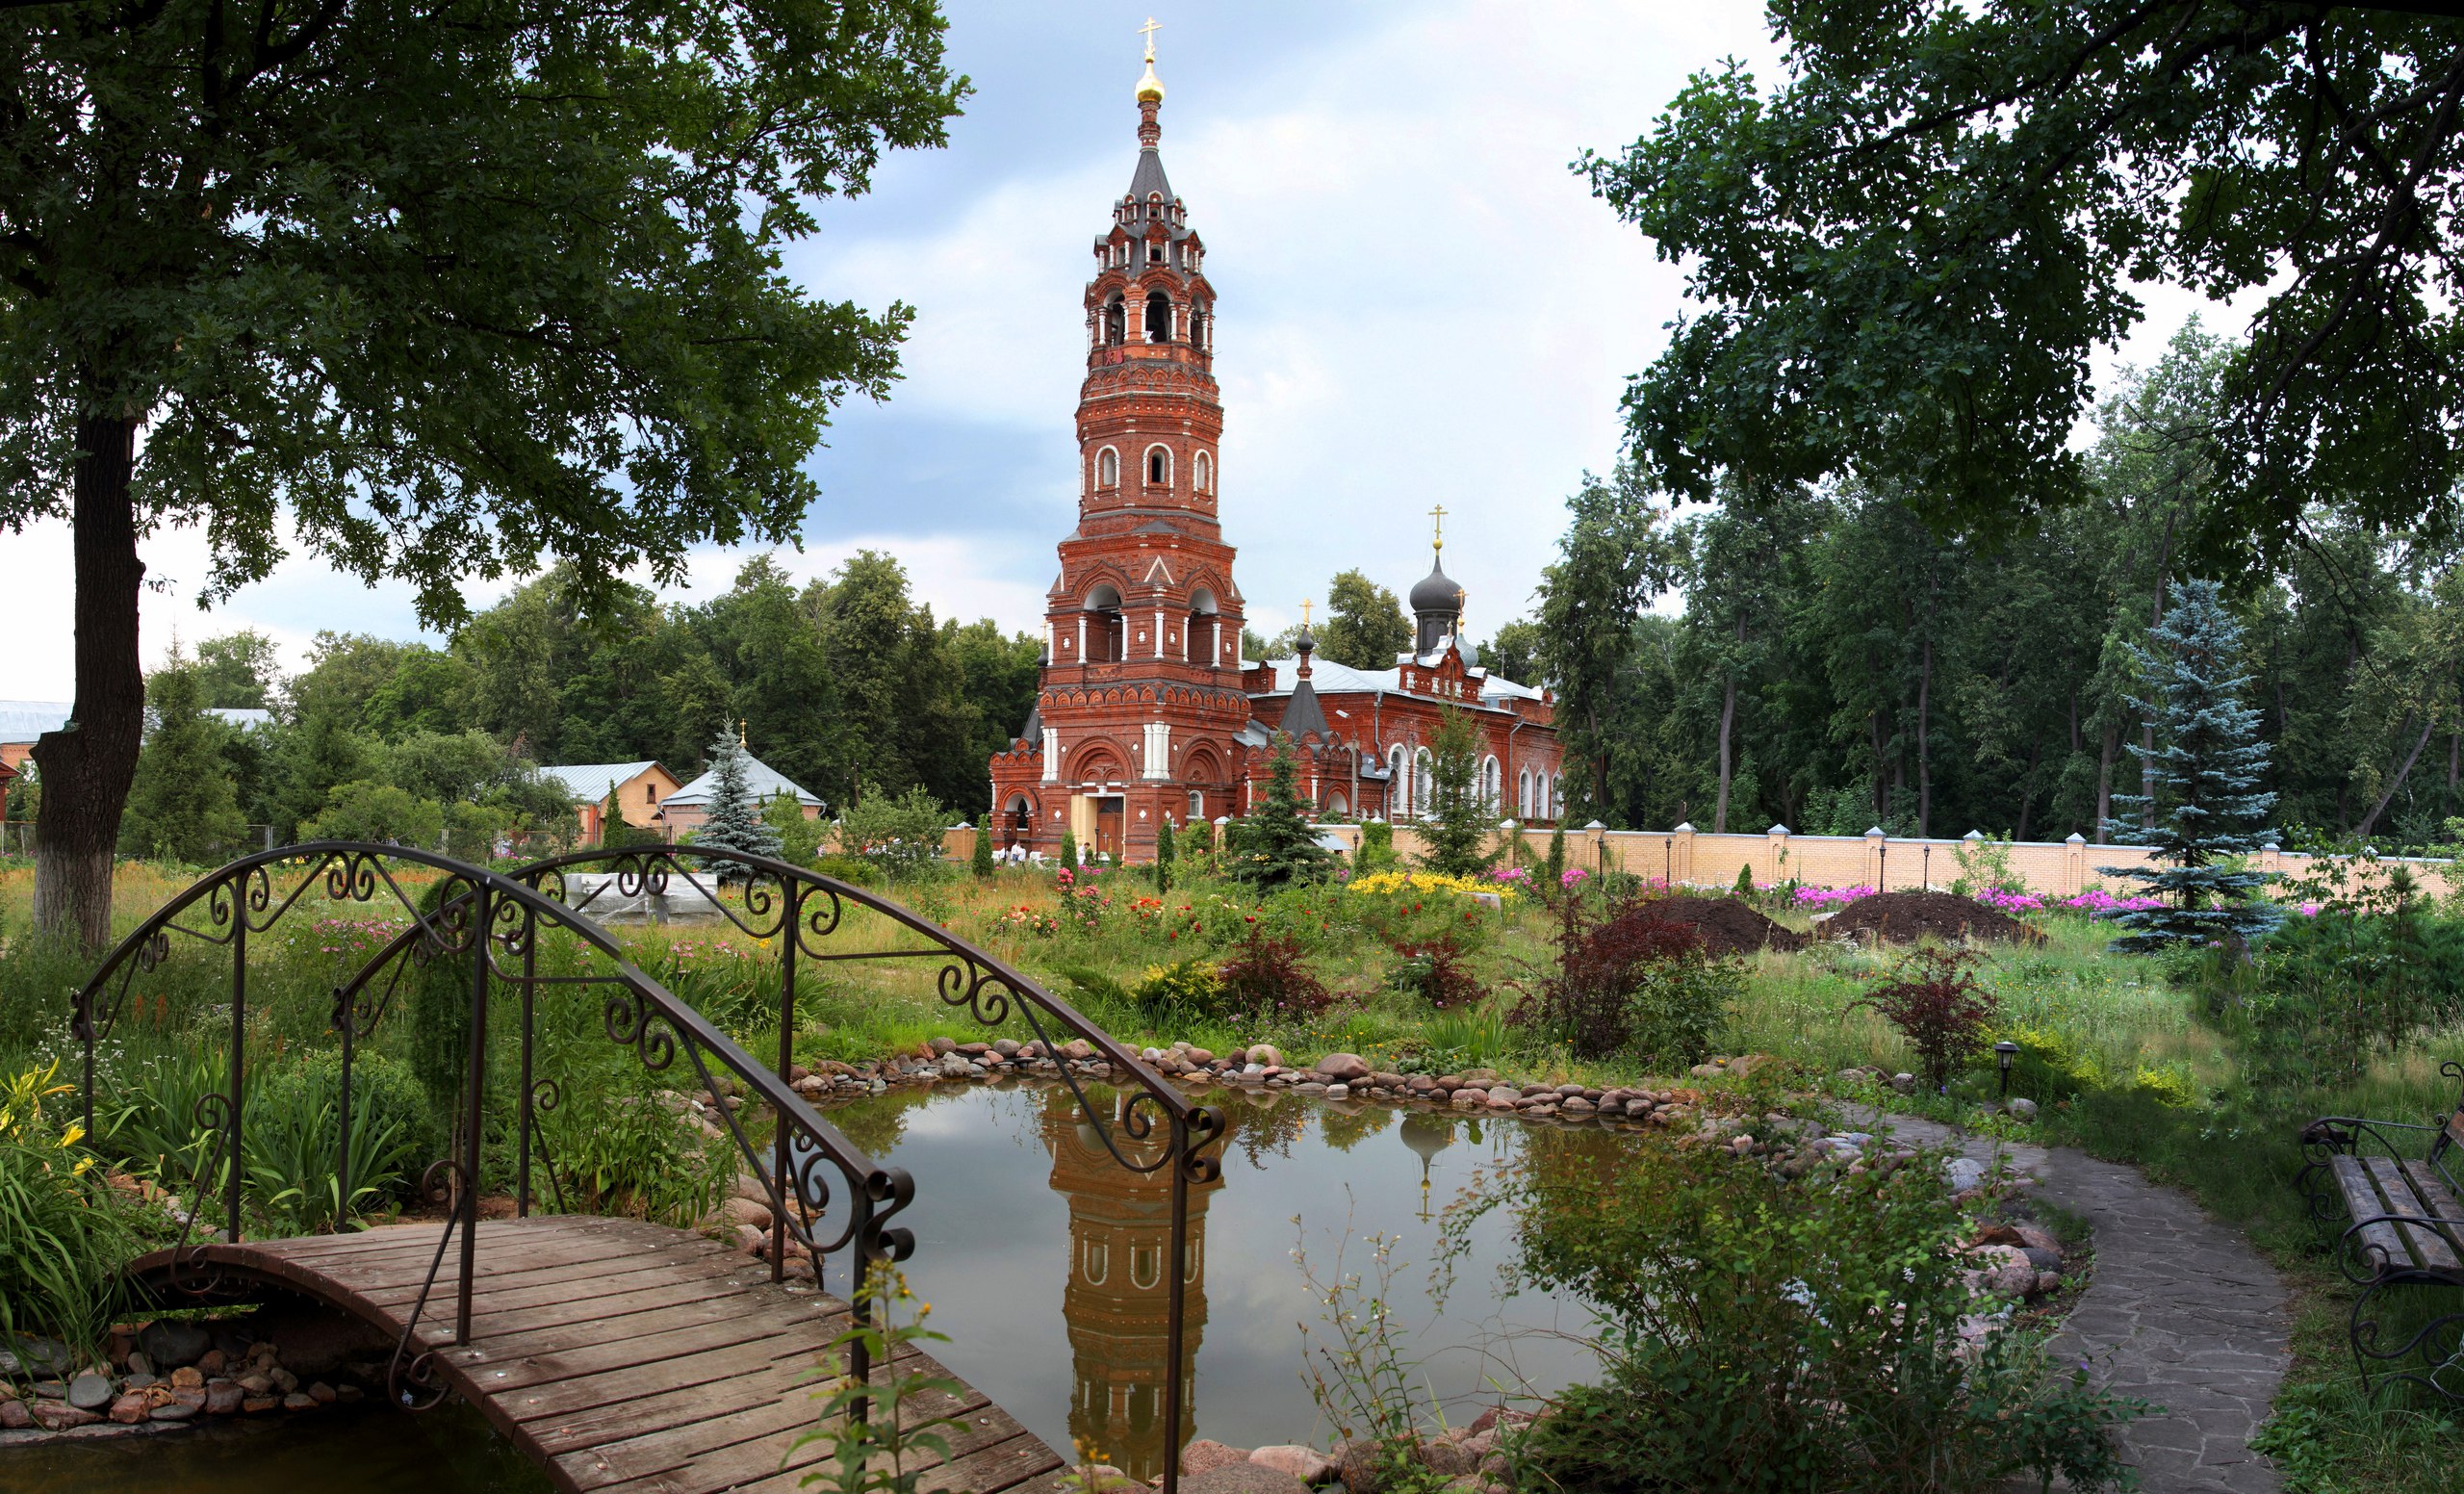 Главным архитектурным достоянием монастыря считается Покровский собор с высокой шатровой колокольней в псевдорусском стиле